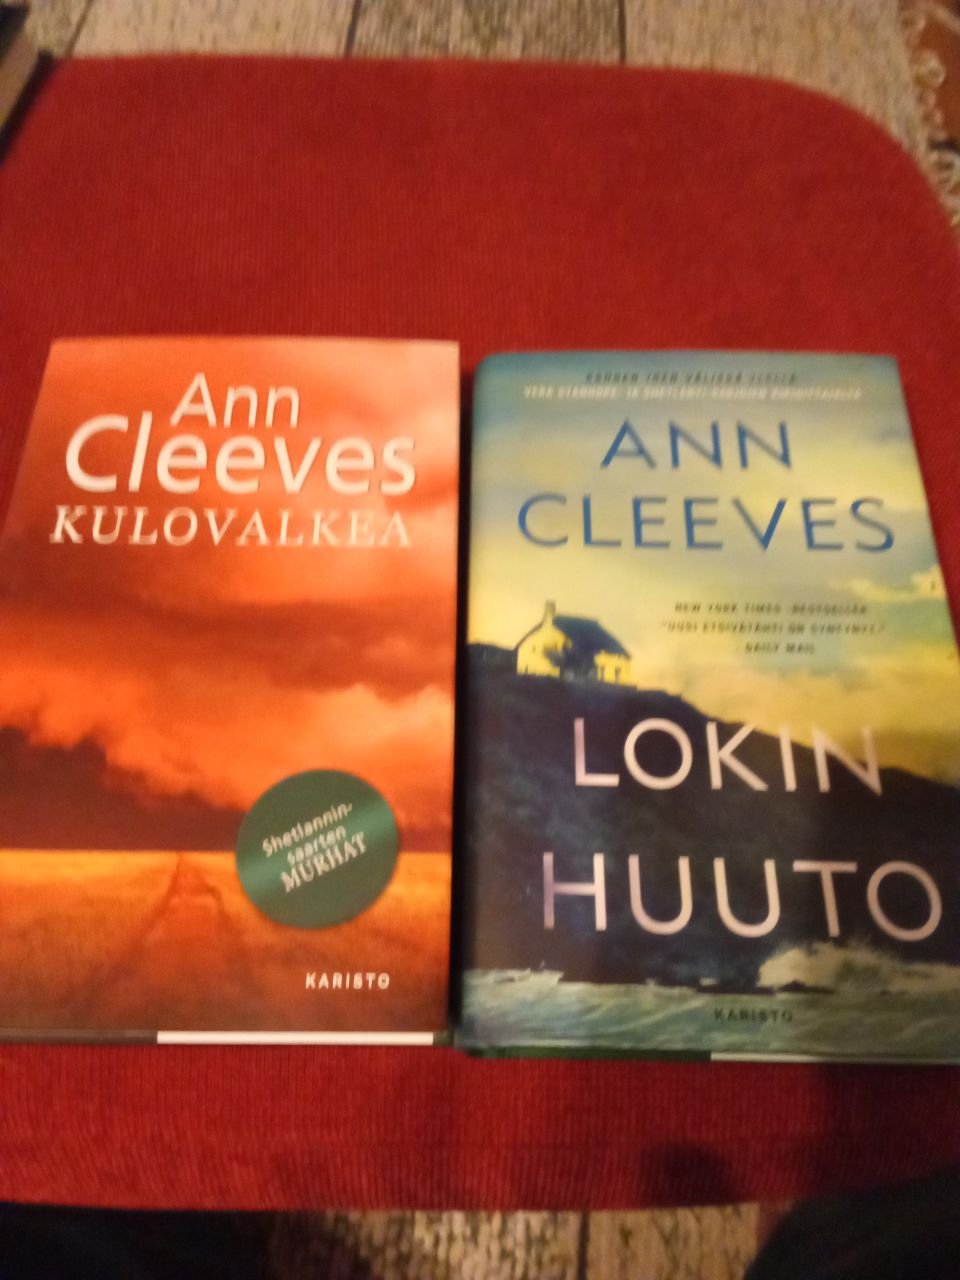 Ann Cleeves